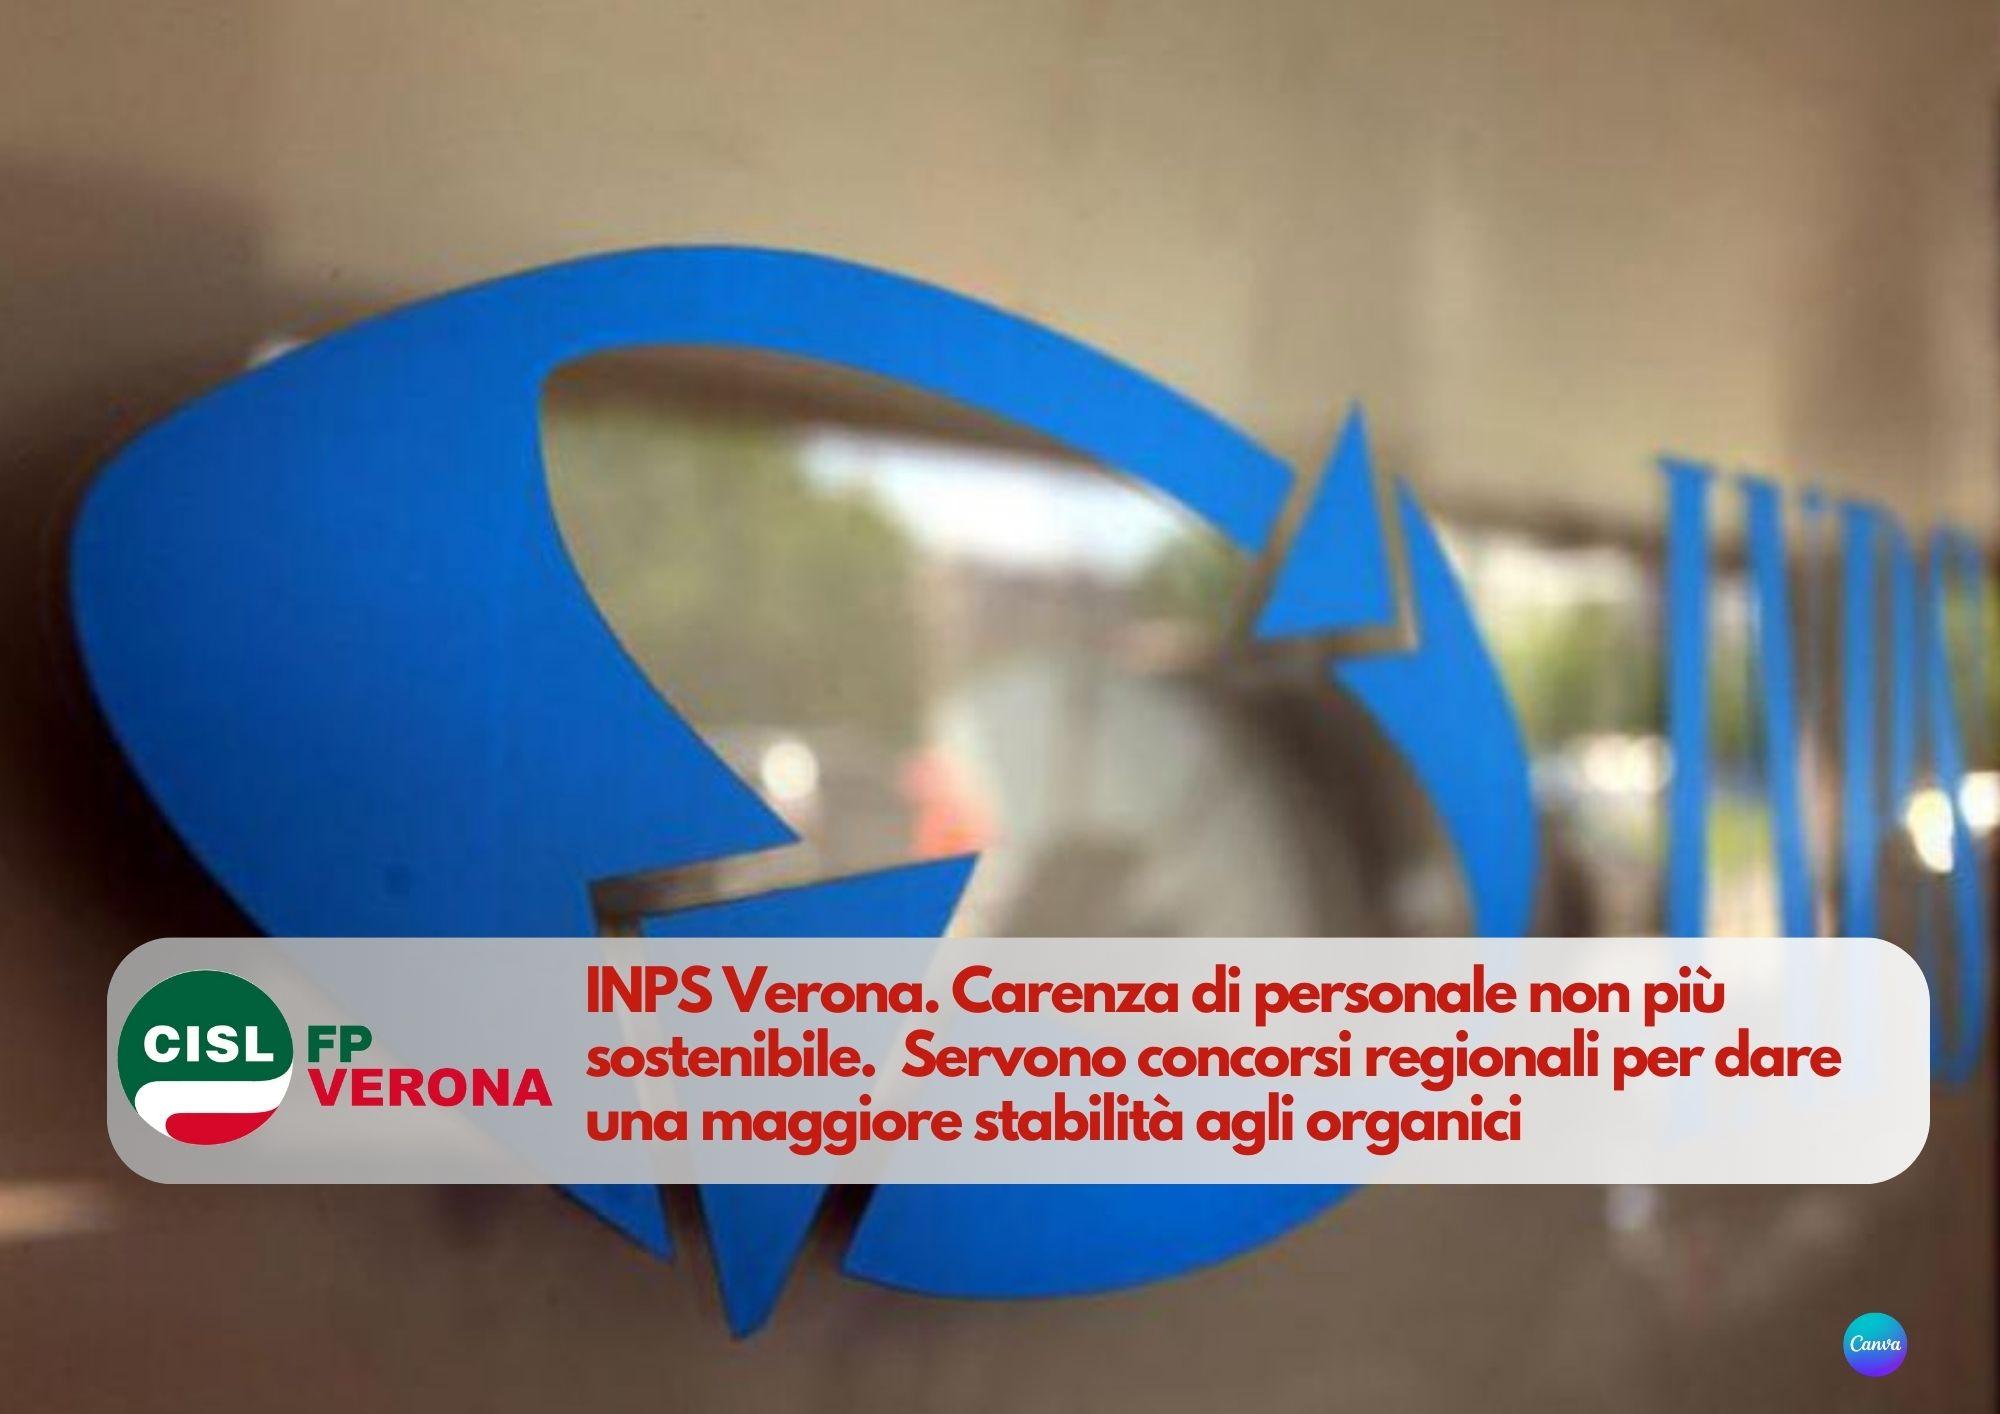 CISL FP Verona. INPS Carenza di personale non più sostenibile. Servono concorsi regionali.